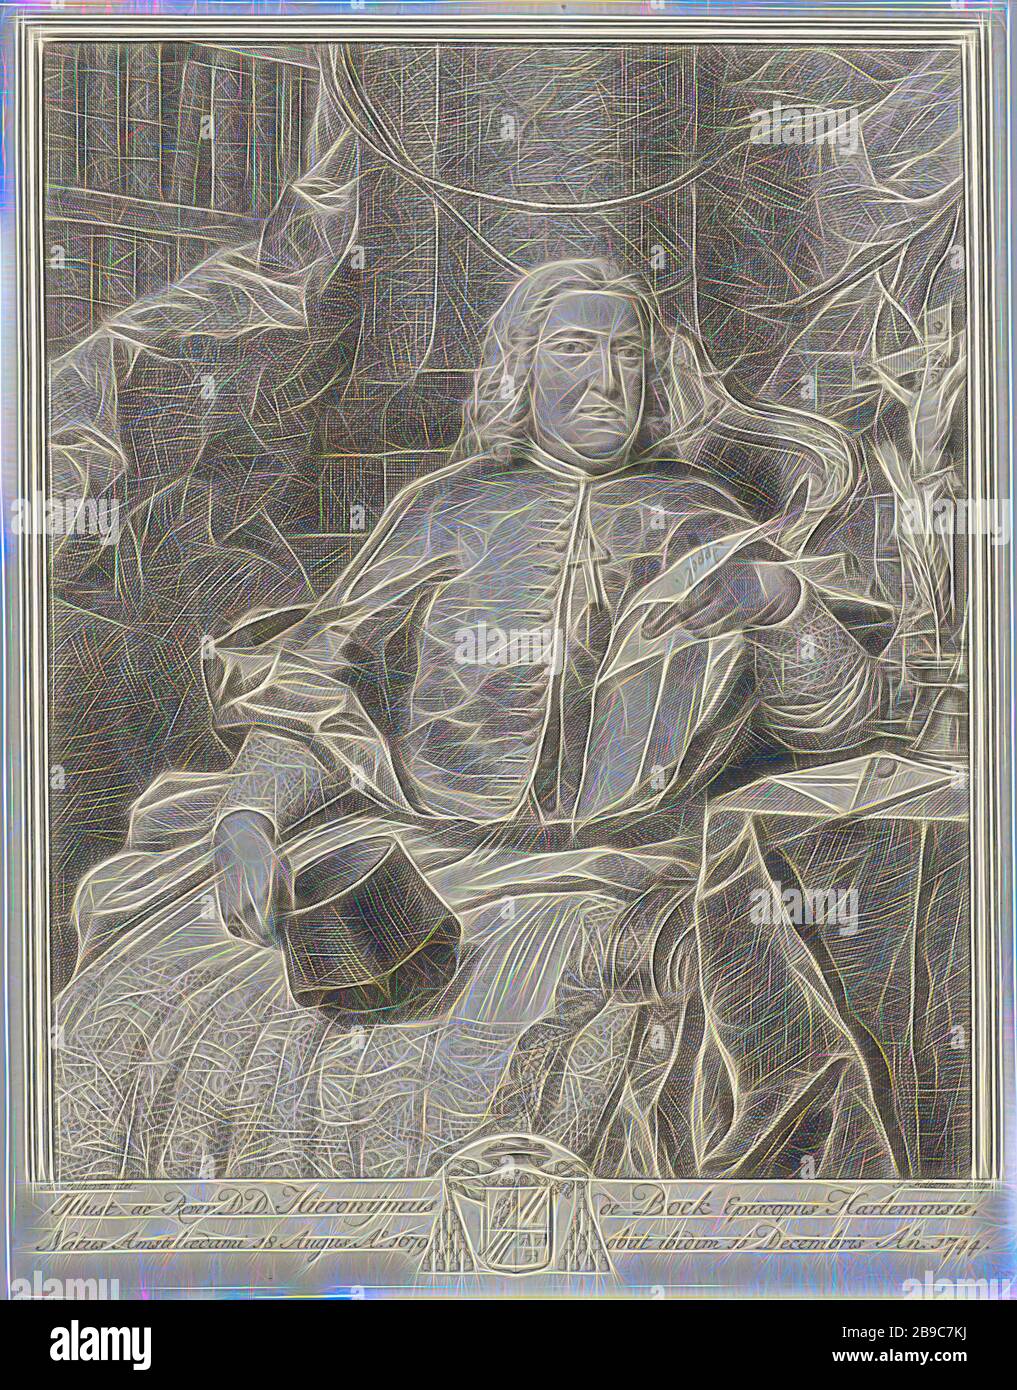 Portrait de Hieronymus de Bock, Portrait de pseudo-évêque d'Utrecht Hieronymus de Bock, barechaped. Genou, assis dans une chaise tournée vers la droite. Dans sa main droite, le clergyman tient sa biretta et dans sa main gauche une lettre manuscrite à l'encre brune sur elle: Apple. Sous le portrait se trouvent en latin son nom, titre, date de naissance et de mort et le manteau des bras de la personne dépeinte., Hieronymus de Bock, Jacob Folkema (mentionné sur l'objet), 1735 - 1767, papier, gravure, h 260 mm × W 201 mm, repensé par Gibon, conception d'un brillant chaleureux et joyeux de la luminosité et des rayons de lumière radiance. Classique Banque D'Images